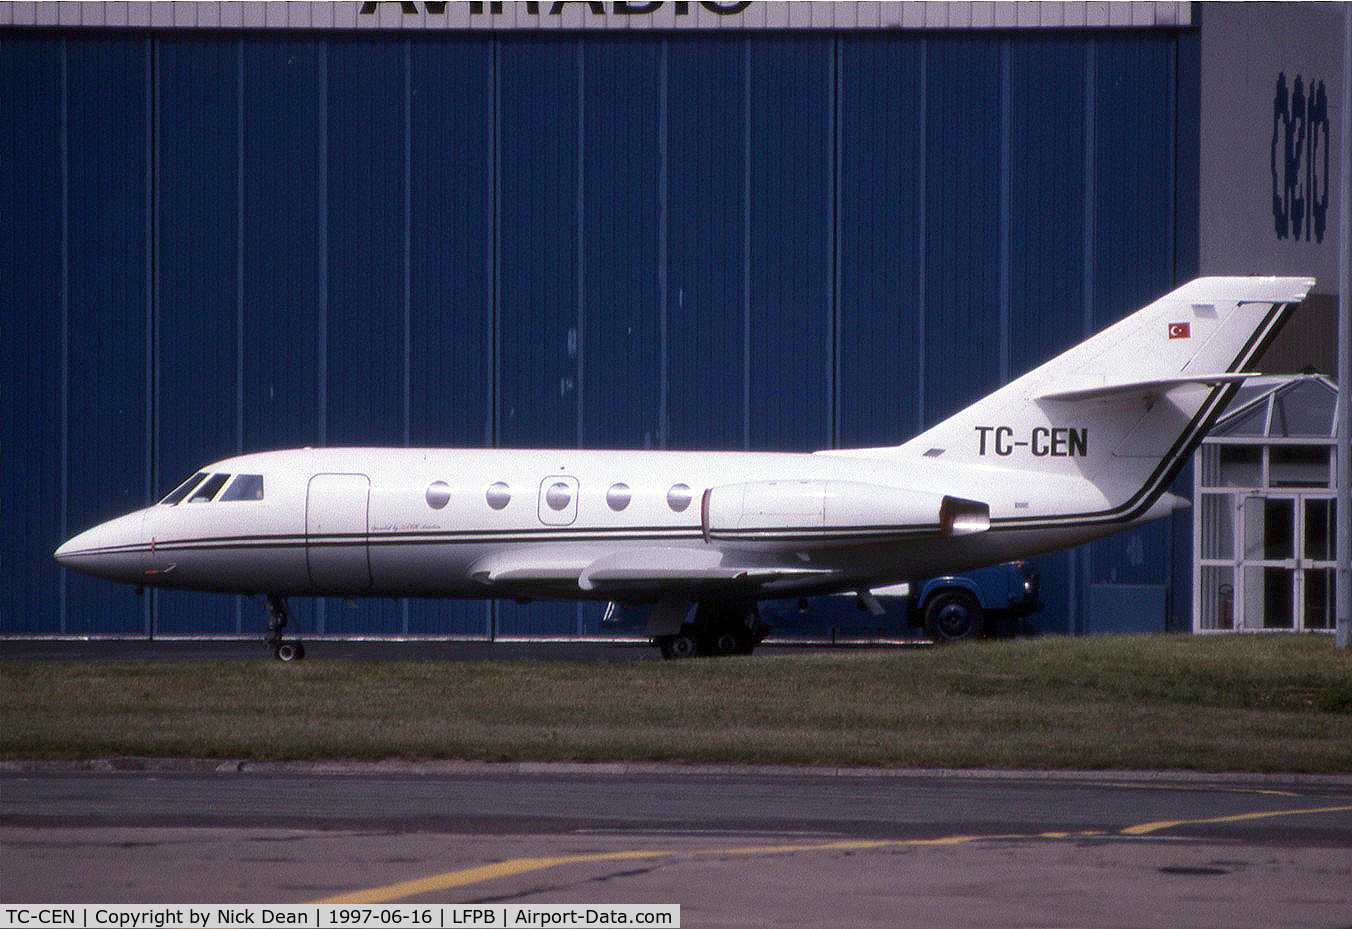 TC-CEN, 1975 Dassault Falcon (Mystere) 20E C/N 326, LFPB